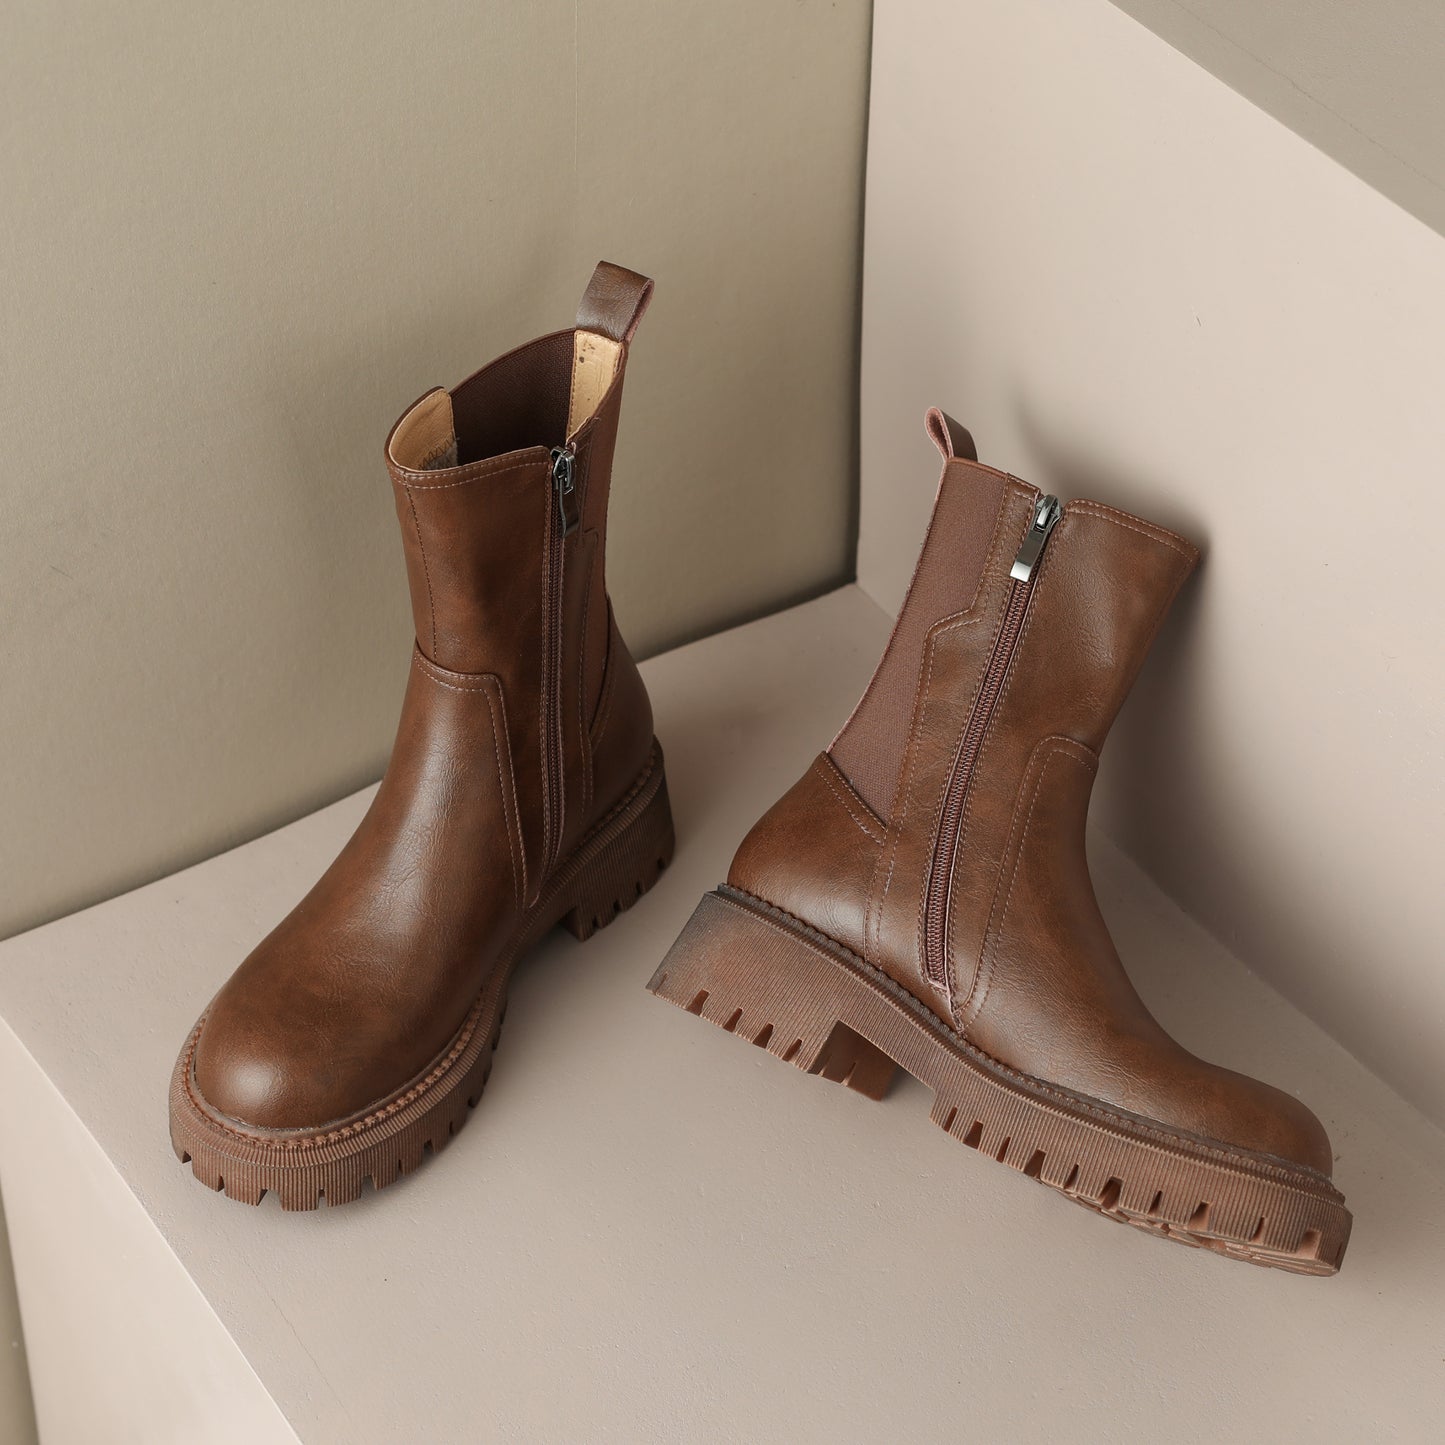 TinaCus Handmade Women's Leather Patchwork Side Zip Round Toe Low Block Heel Platform Boots